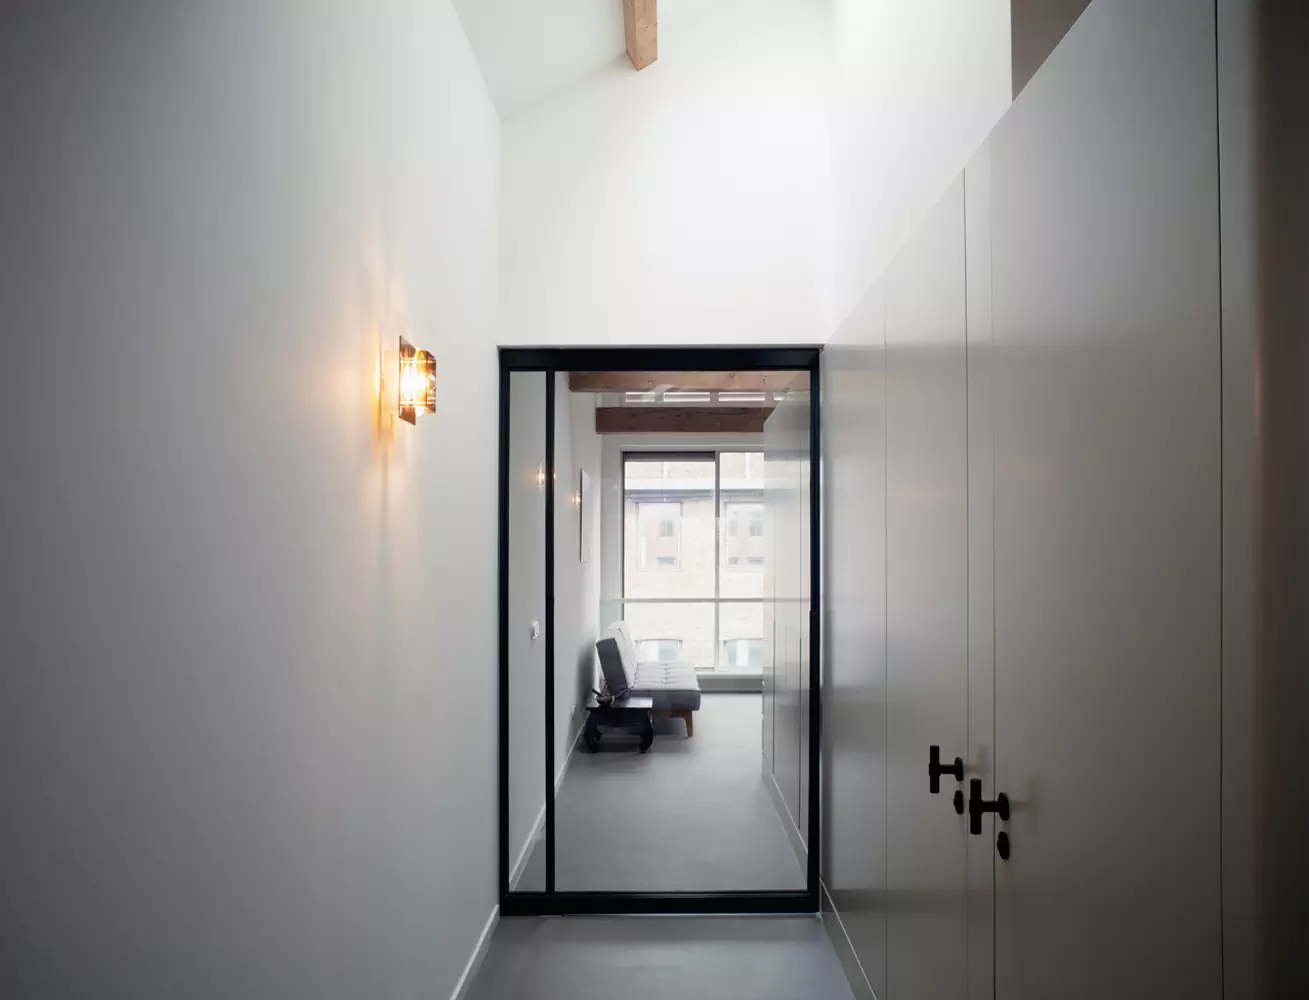 Эстетика повседневности в интерьере апартаментов с высокими потолками и световыми окнами — проект Studio Appelo